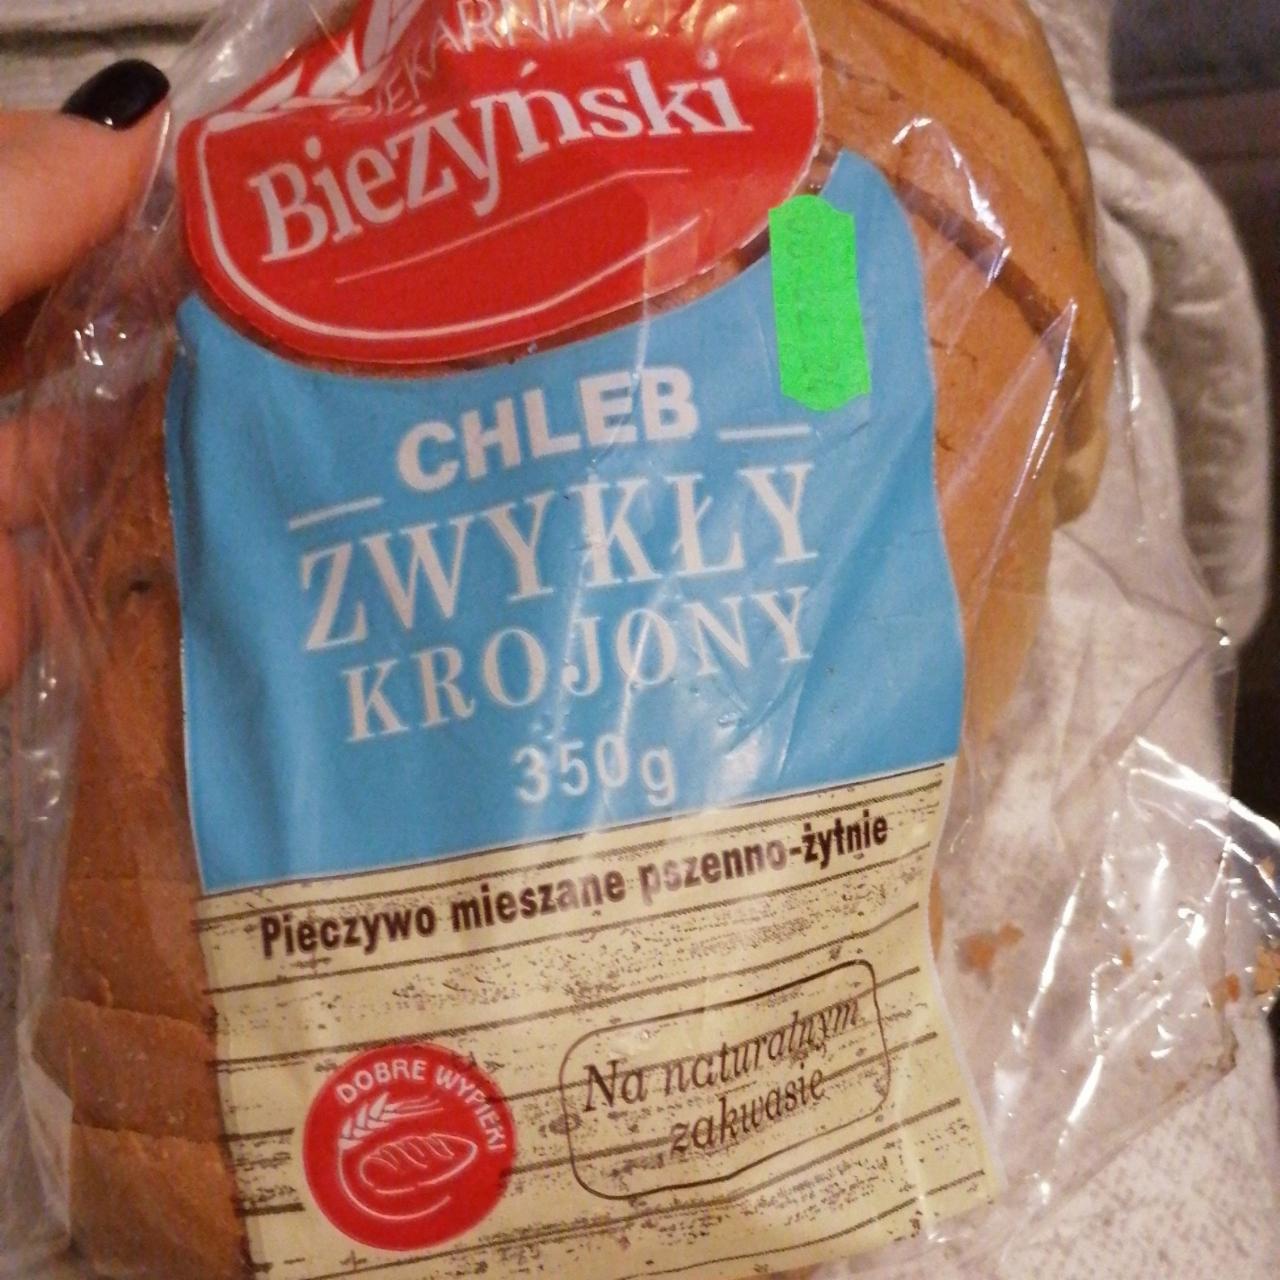 Фото - Chleb zwykły krojony Pieczywo mieszane pszenno-żytnie Biezybski